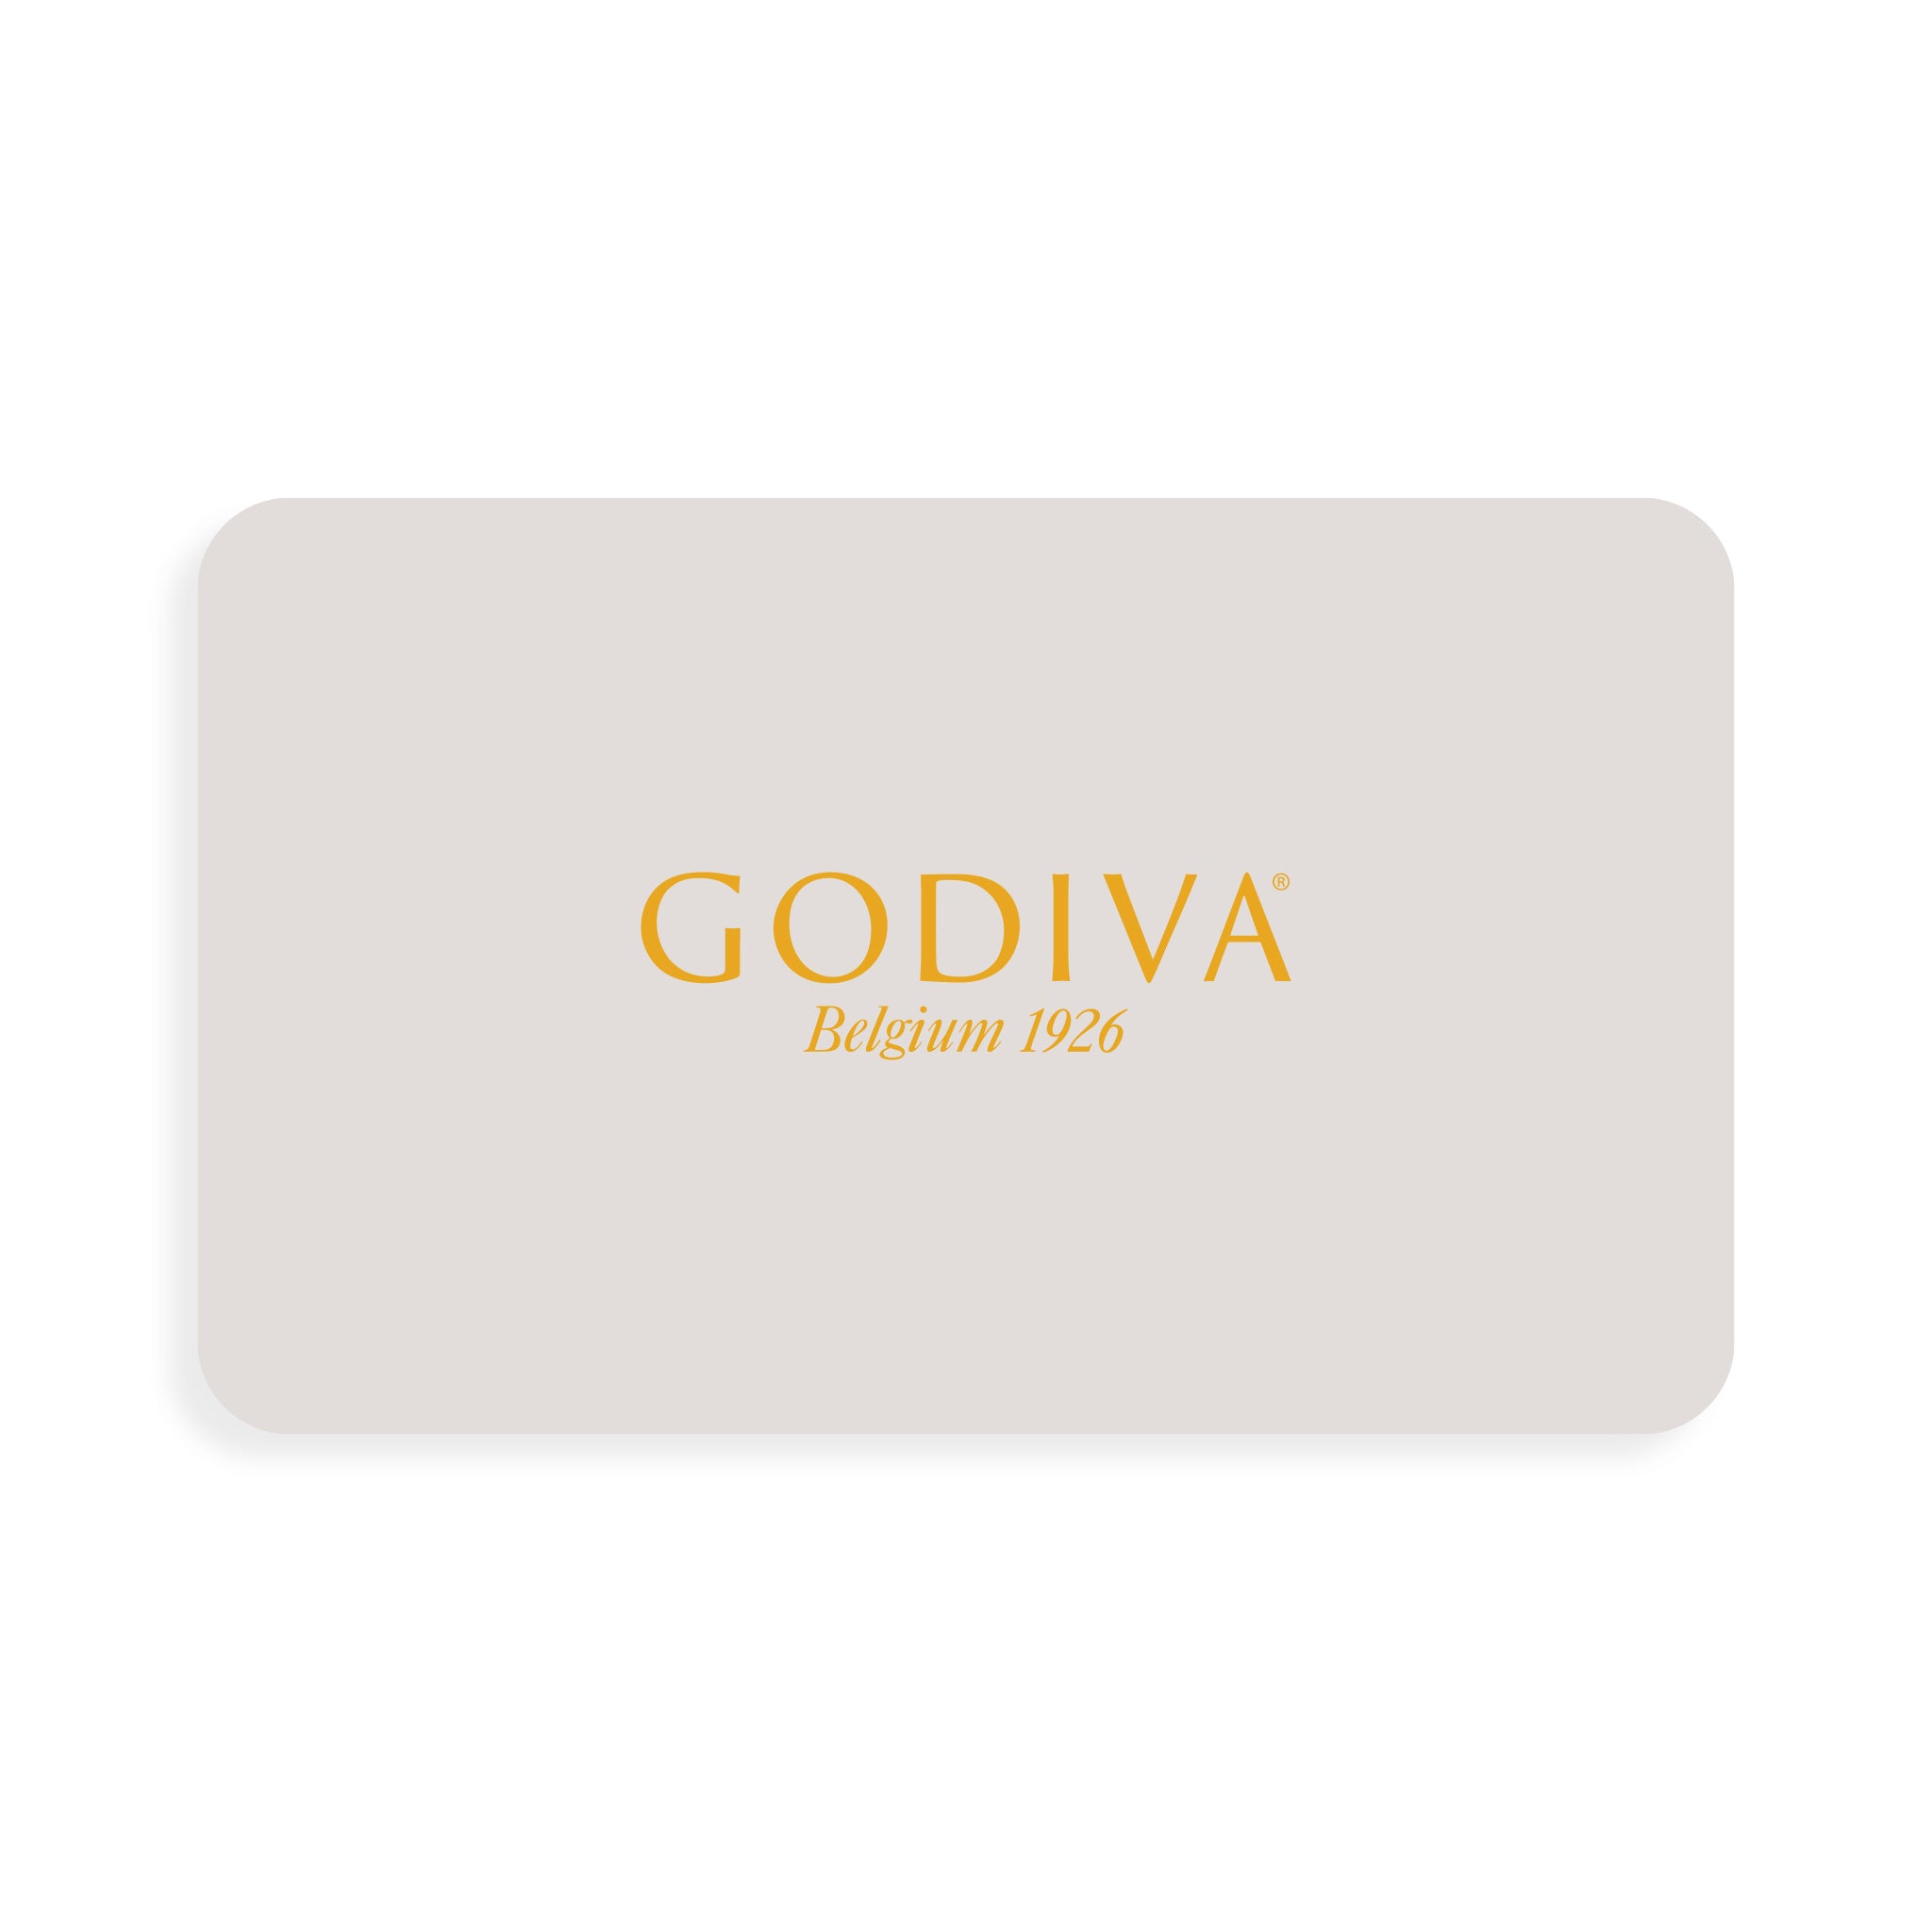 Godiva-Gift-Card.jpg